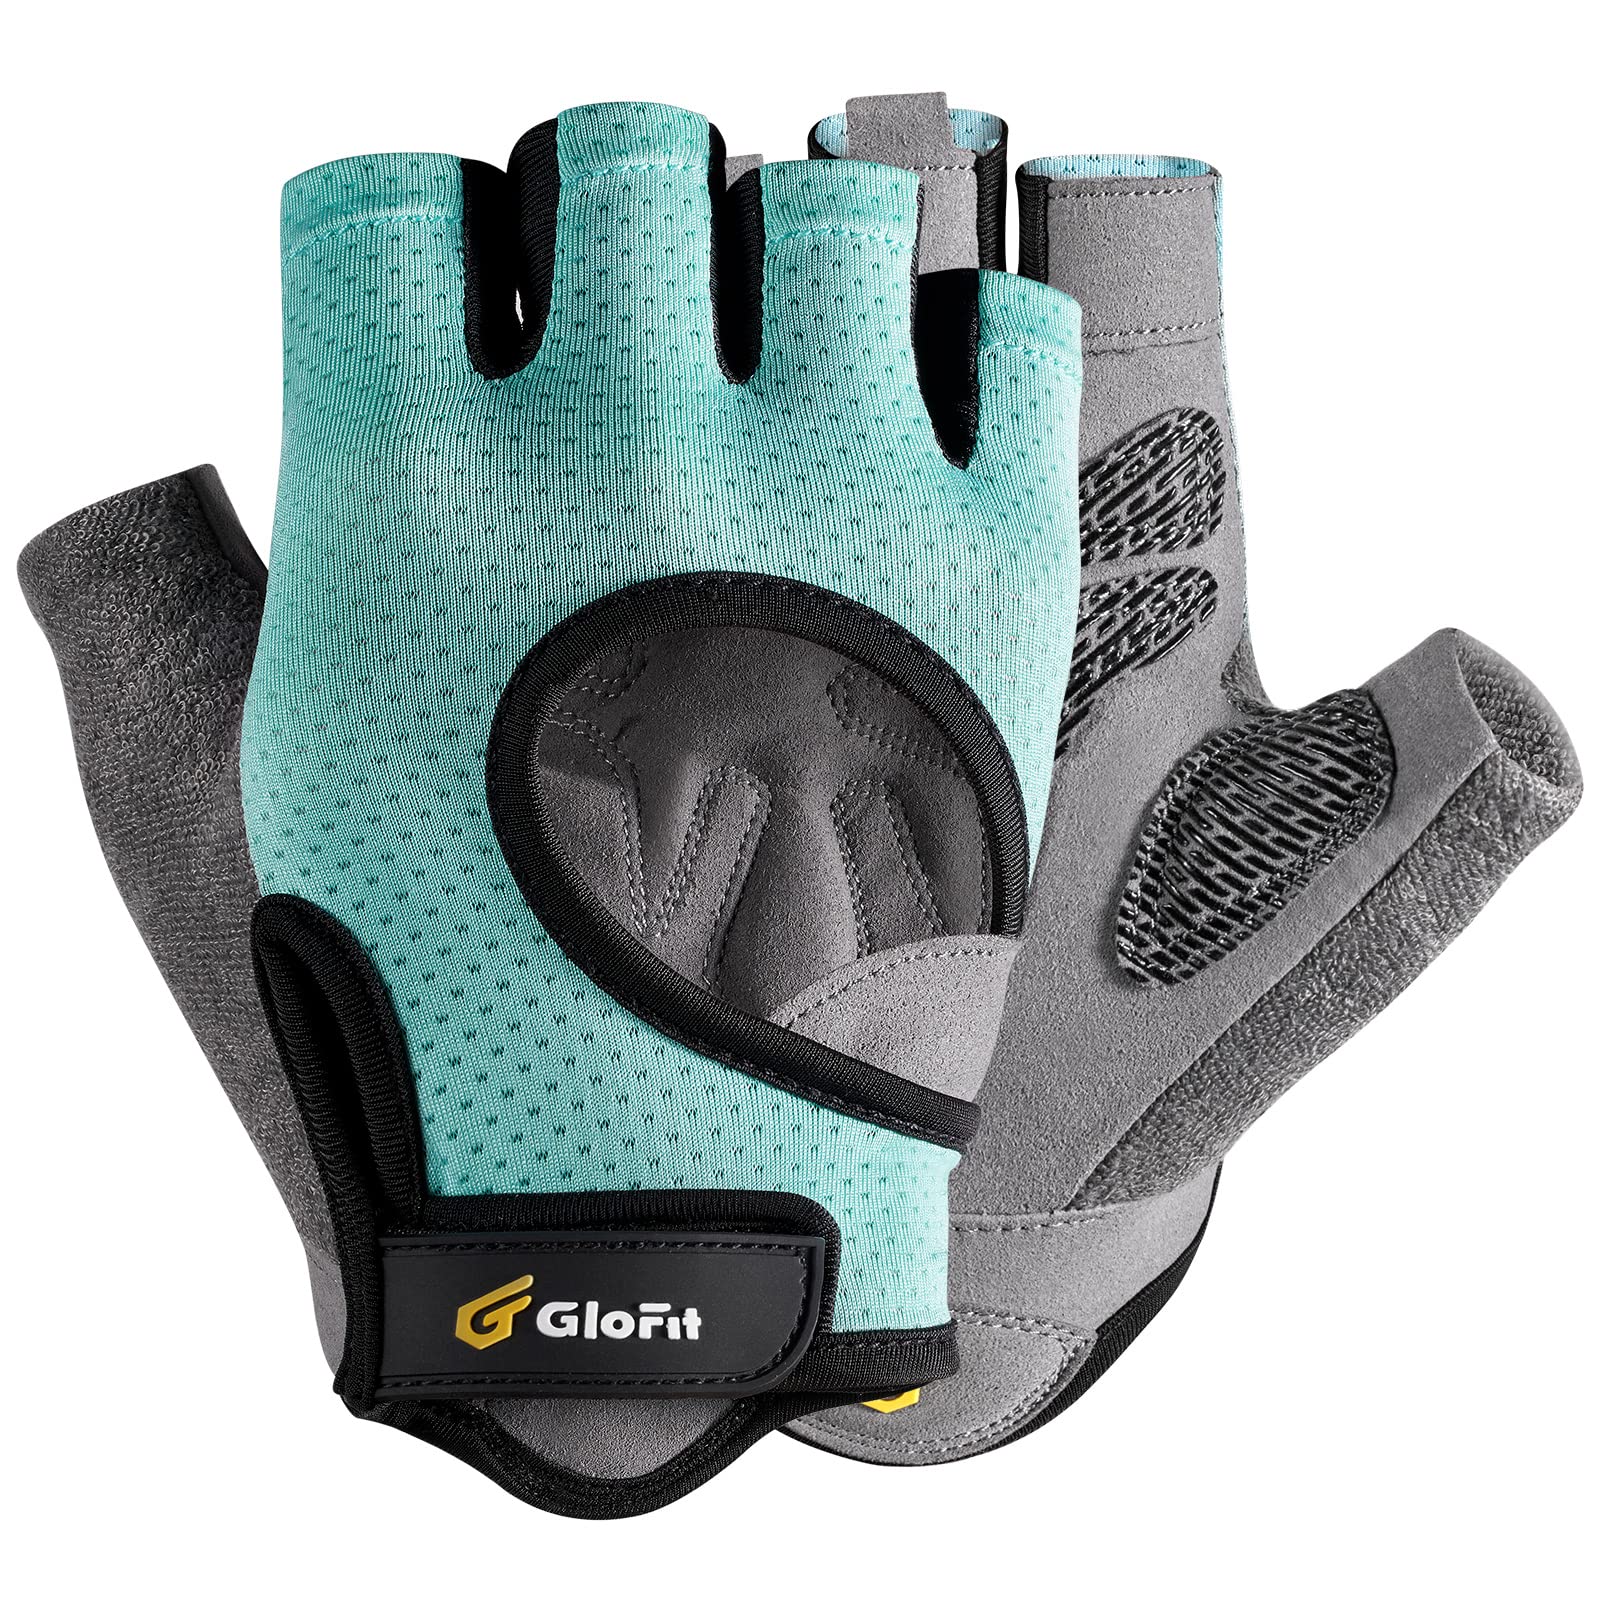 Glofit Workout Gloves for Women Men, Lightweight Weight Lifting